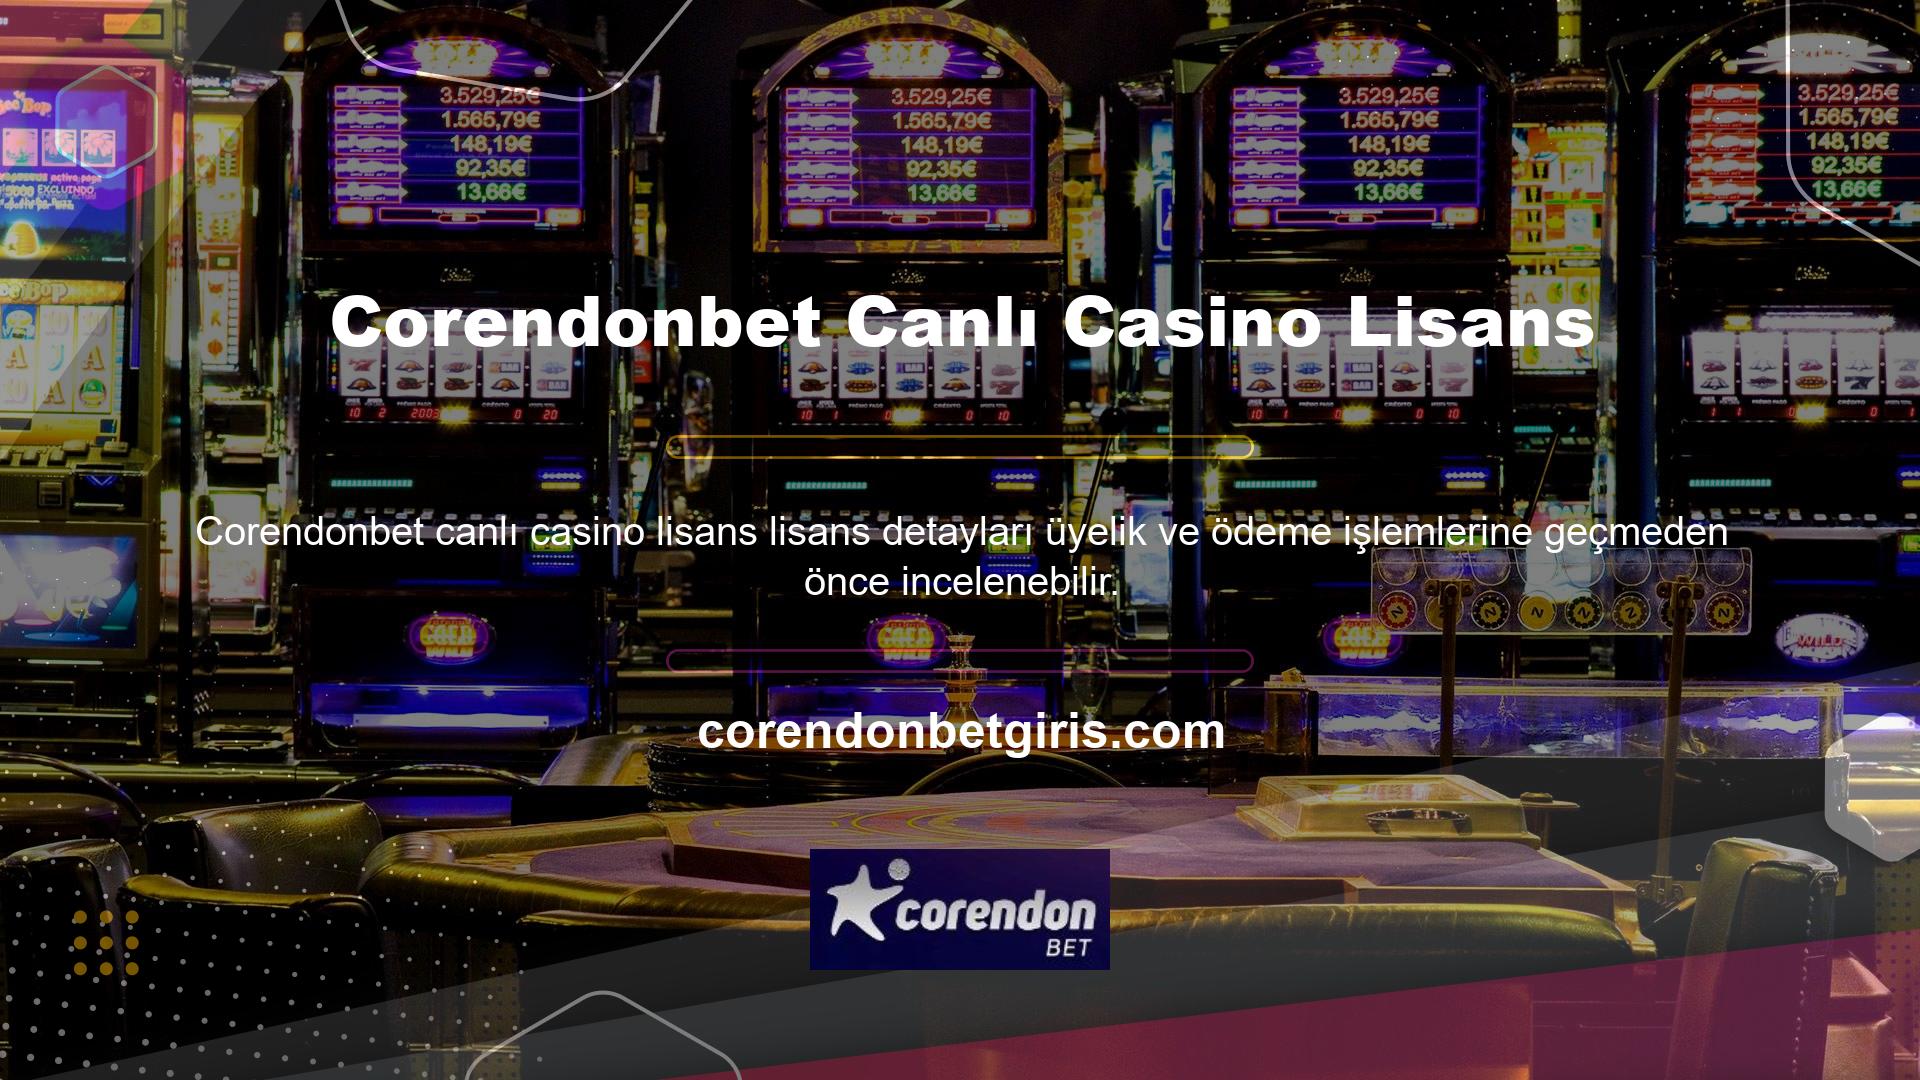 Casino tutkunları harekete geçmek ve Corendonbet canlı casino lisansını değerlendirmek isteyeceklerdir